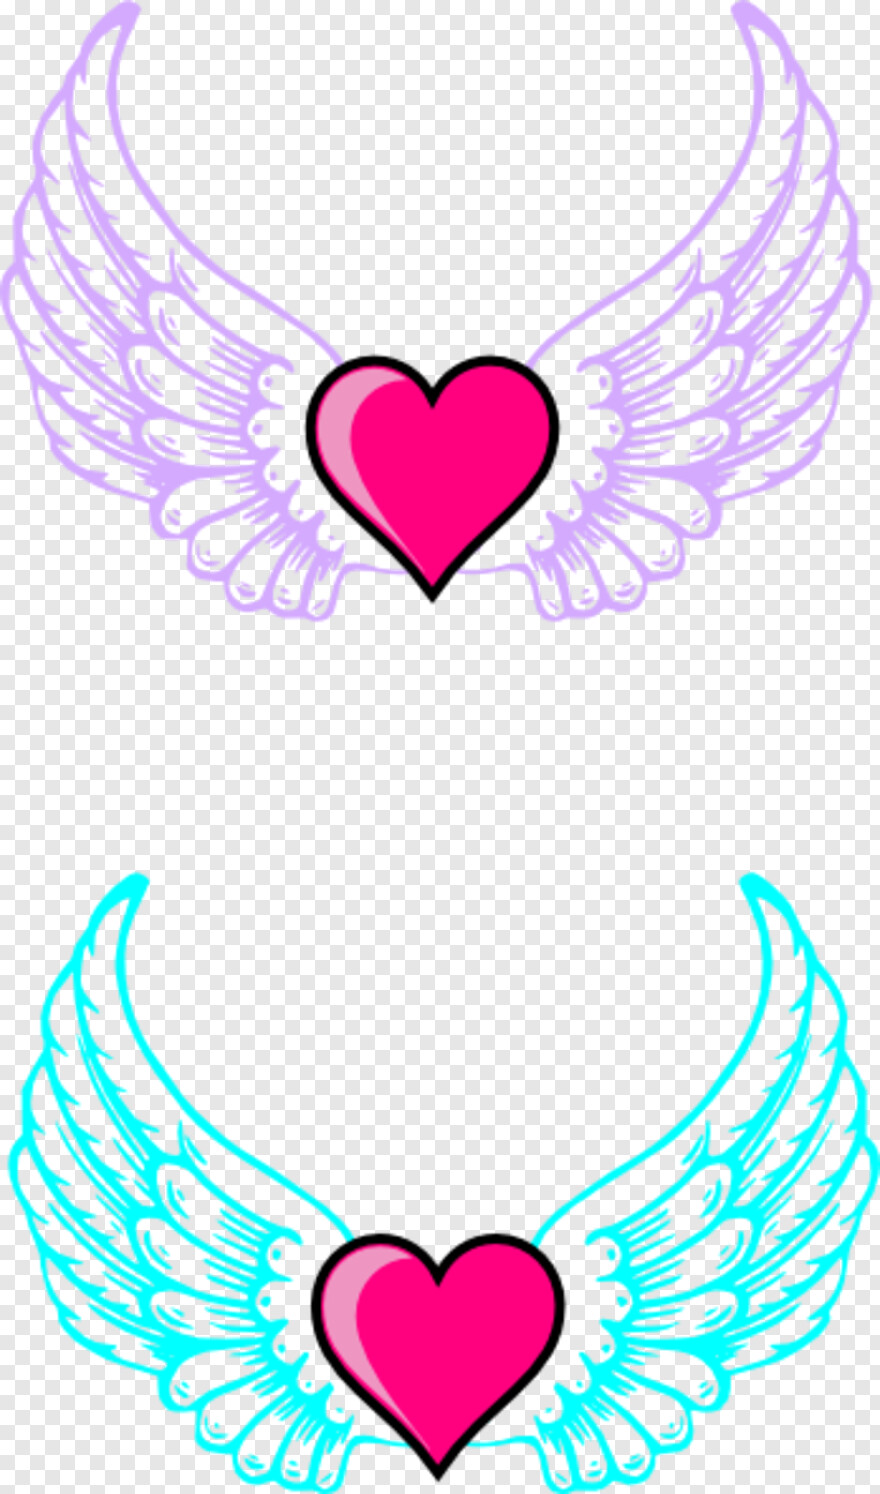 angel-wings-vector # 516376